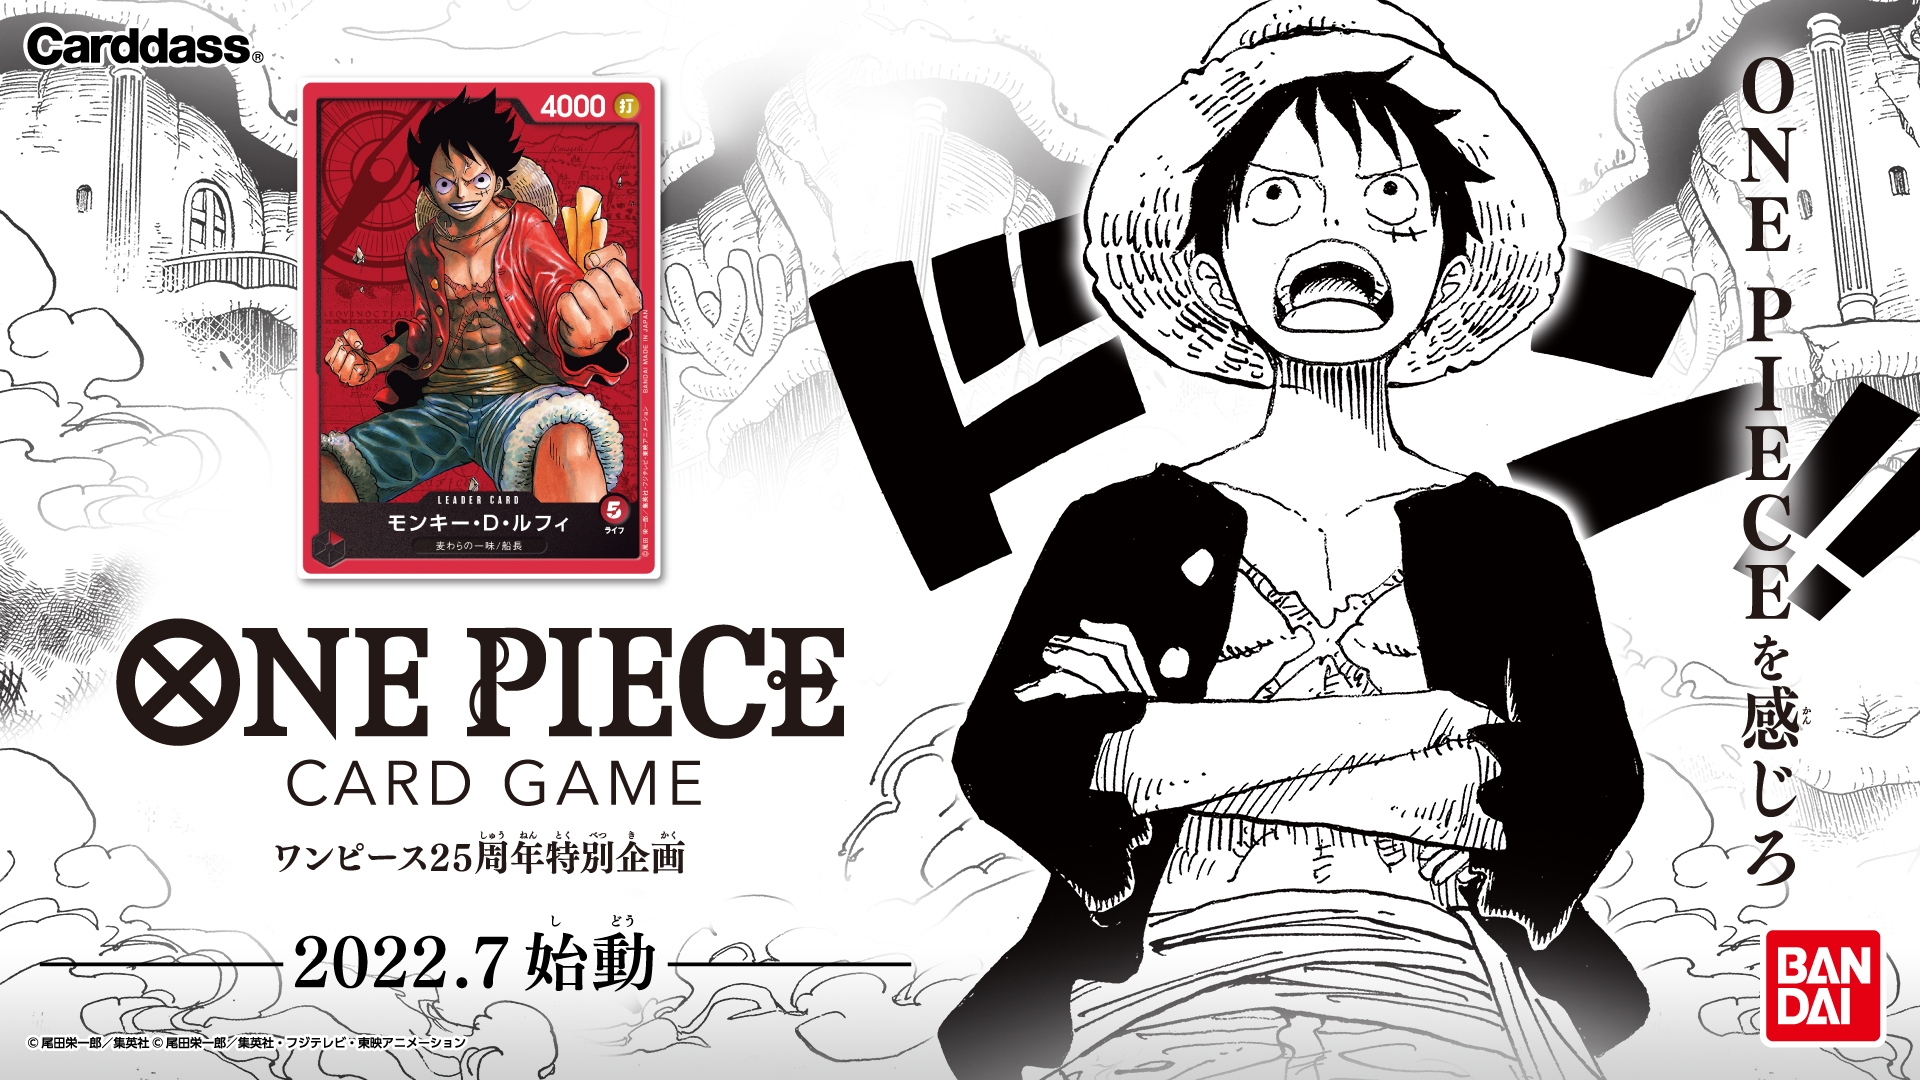 Gioco di carte collezionabili a tema One Piece